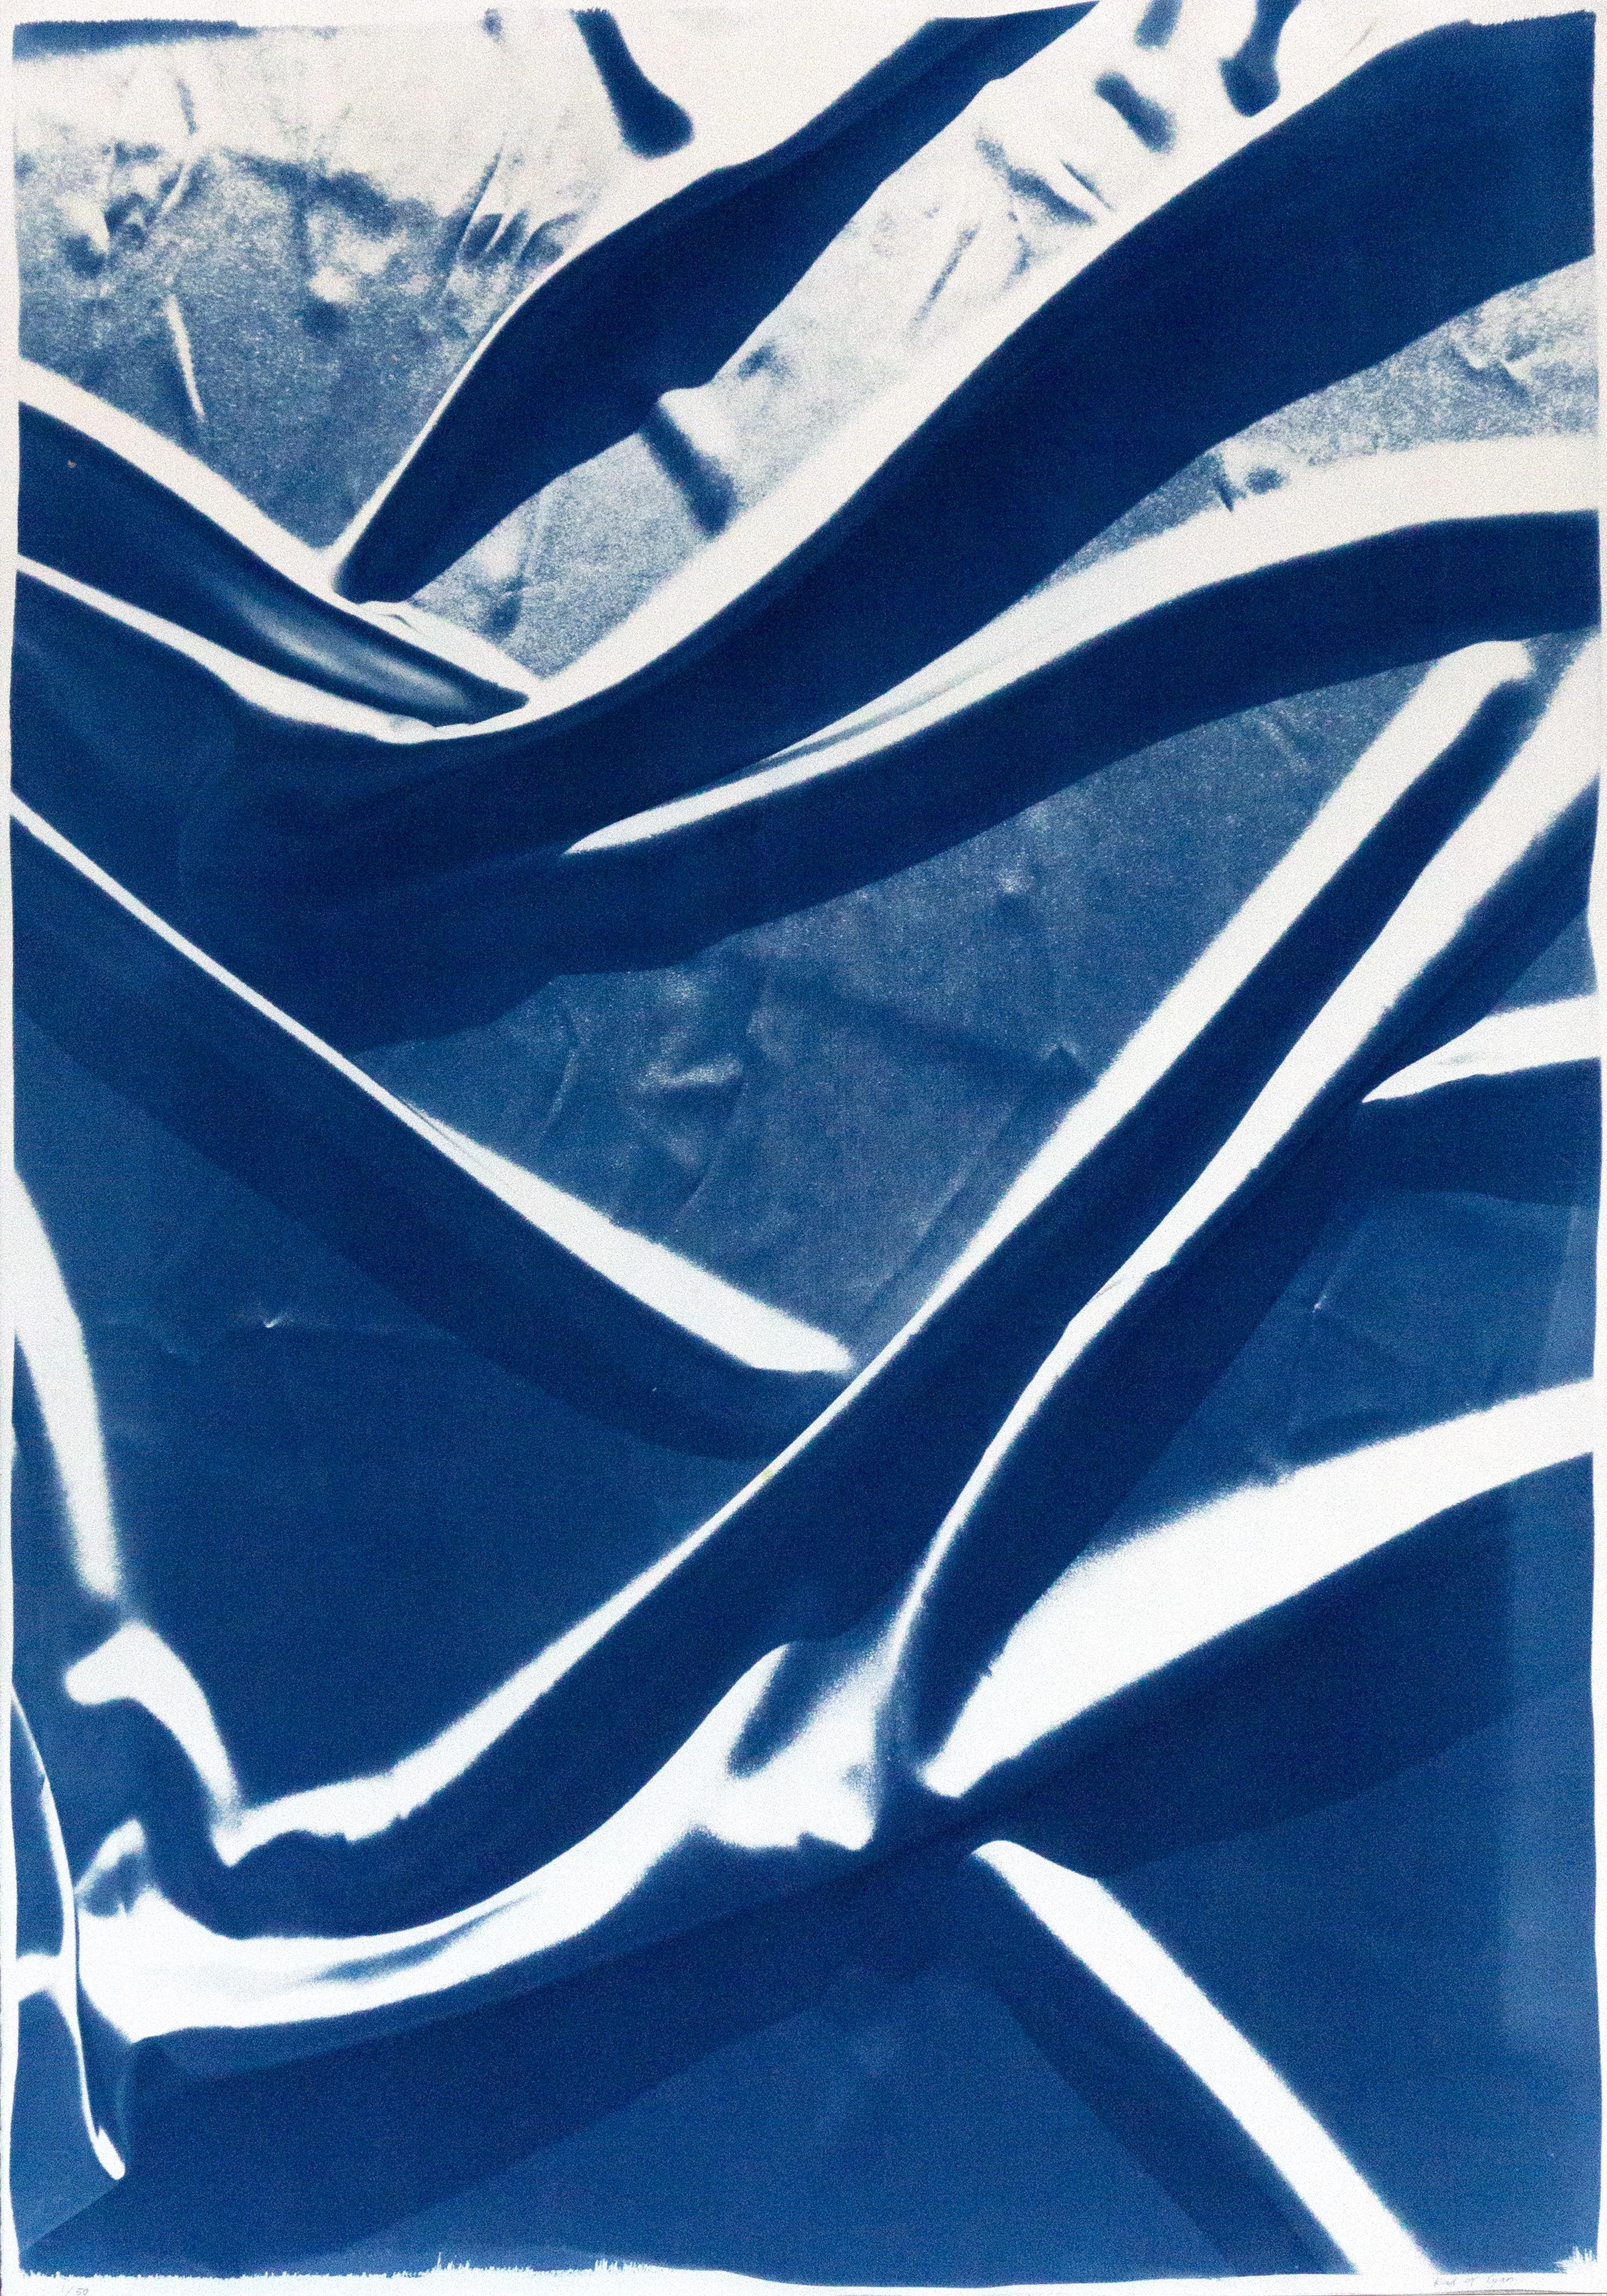 Motifs bleus classiques classiques, cyanotype fait à la main, tissu de soie lisse abstrait sur papier